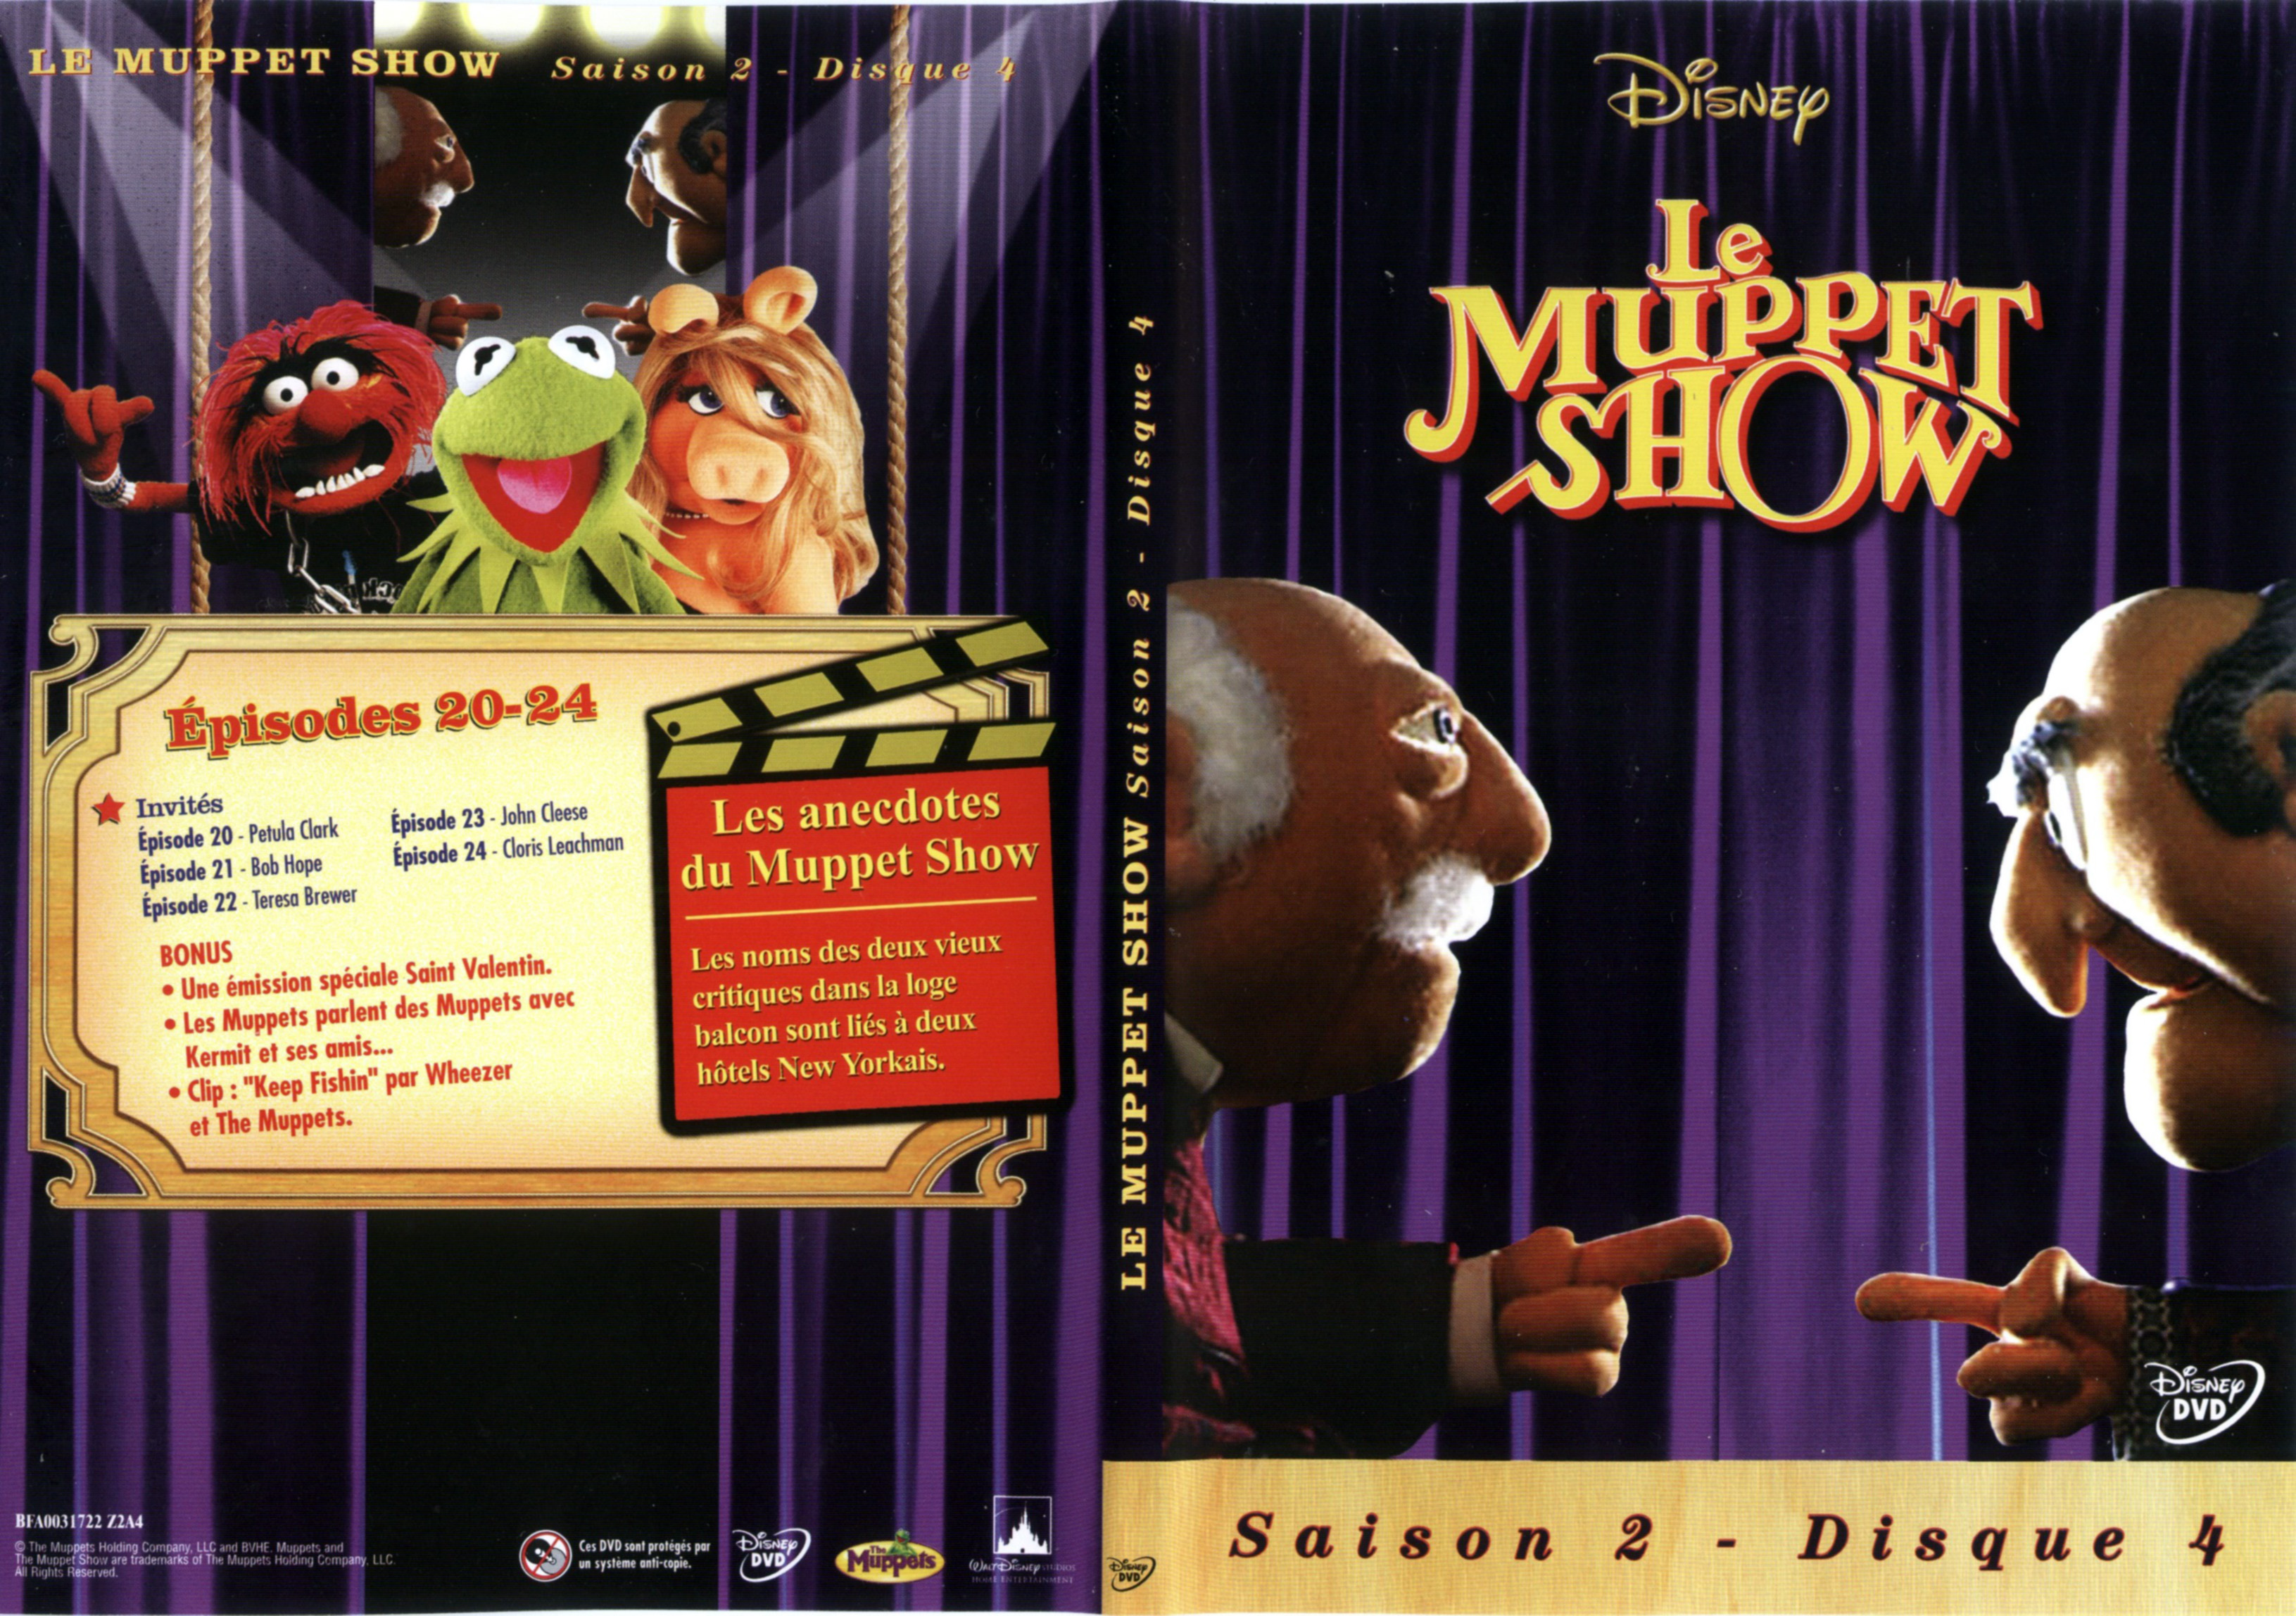 Jaquette DVD Le muppet show Saison 2 DVD 4